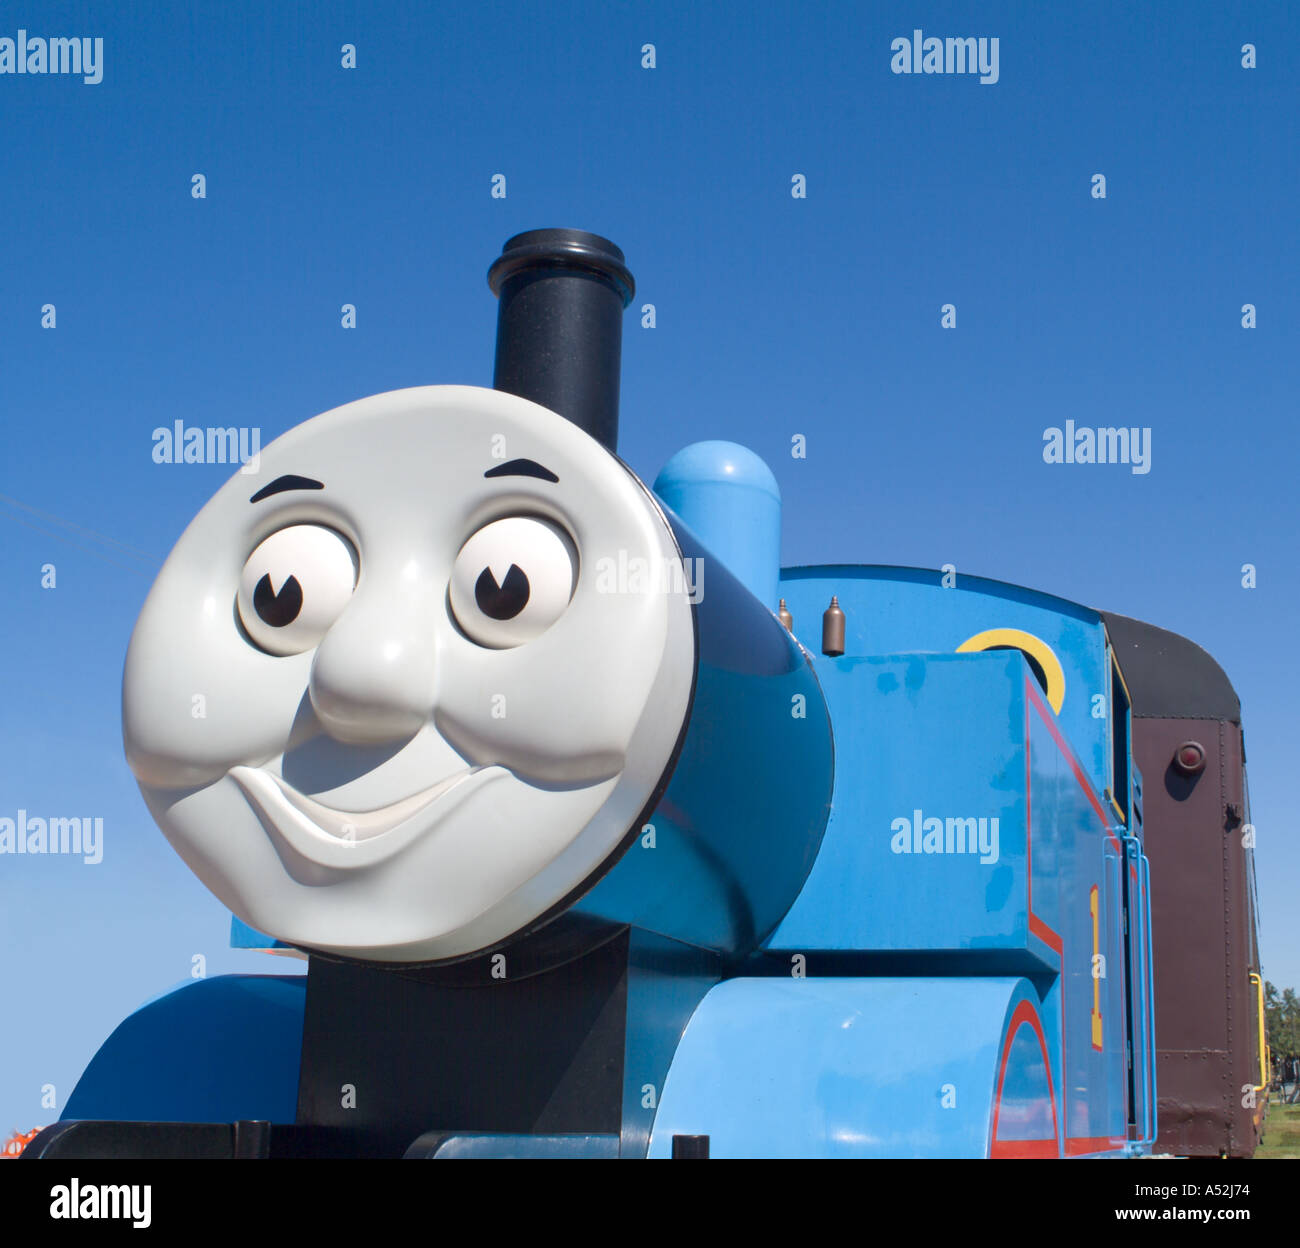 Thomas the train Stock Photo - Alamy